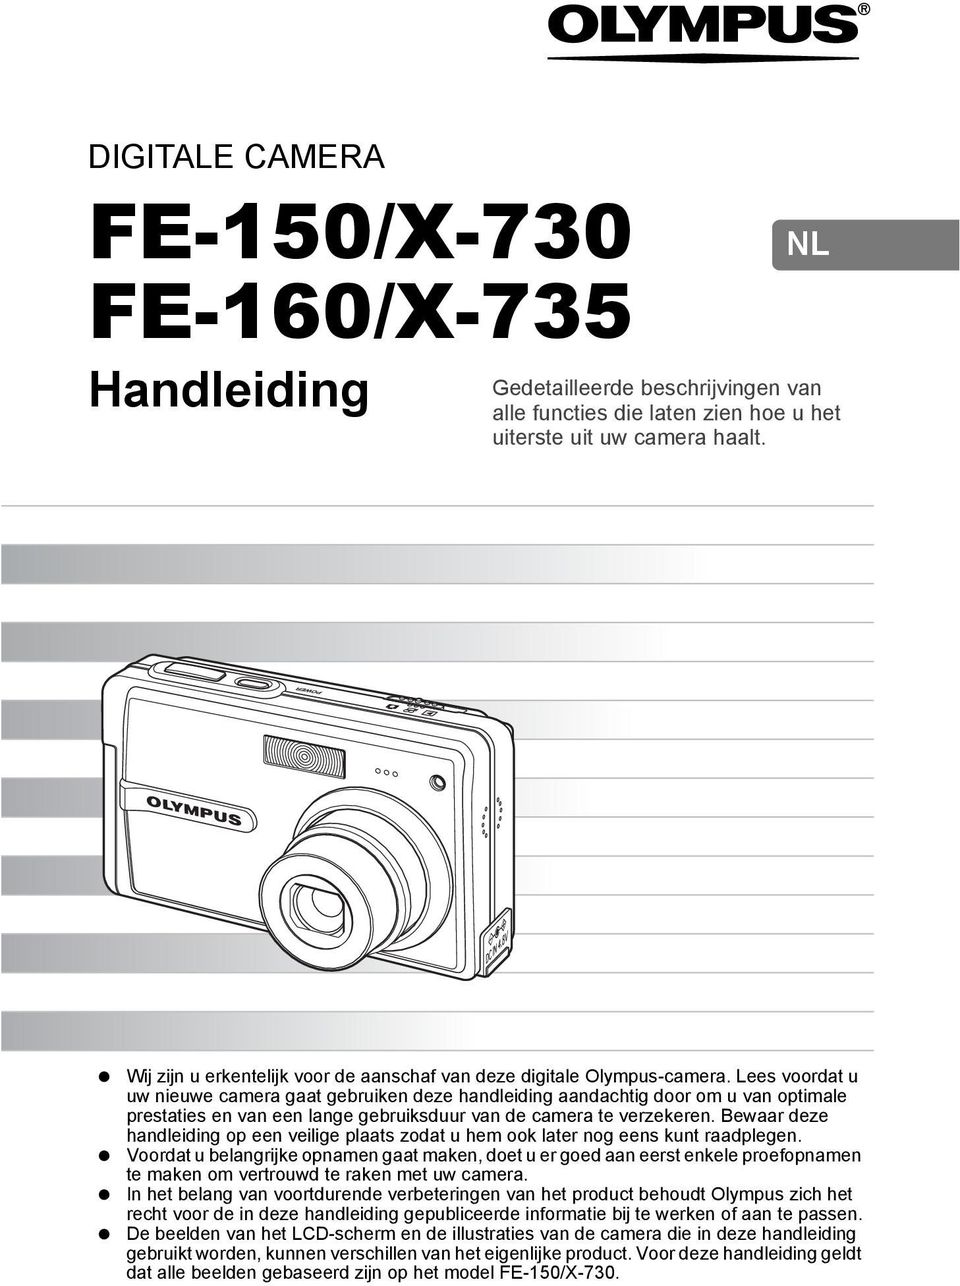 Lees voordat u uw nieuwe camera gaat gebruiken deze handleiding aandachtig door om u van optimale prestaties en van een lange gebruiksduur van de camera te verzekeren.